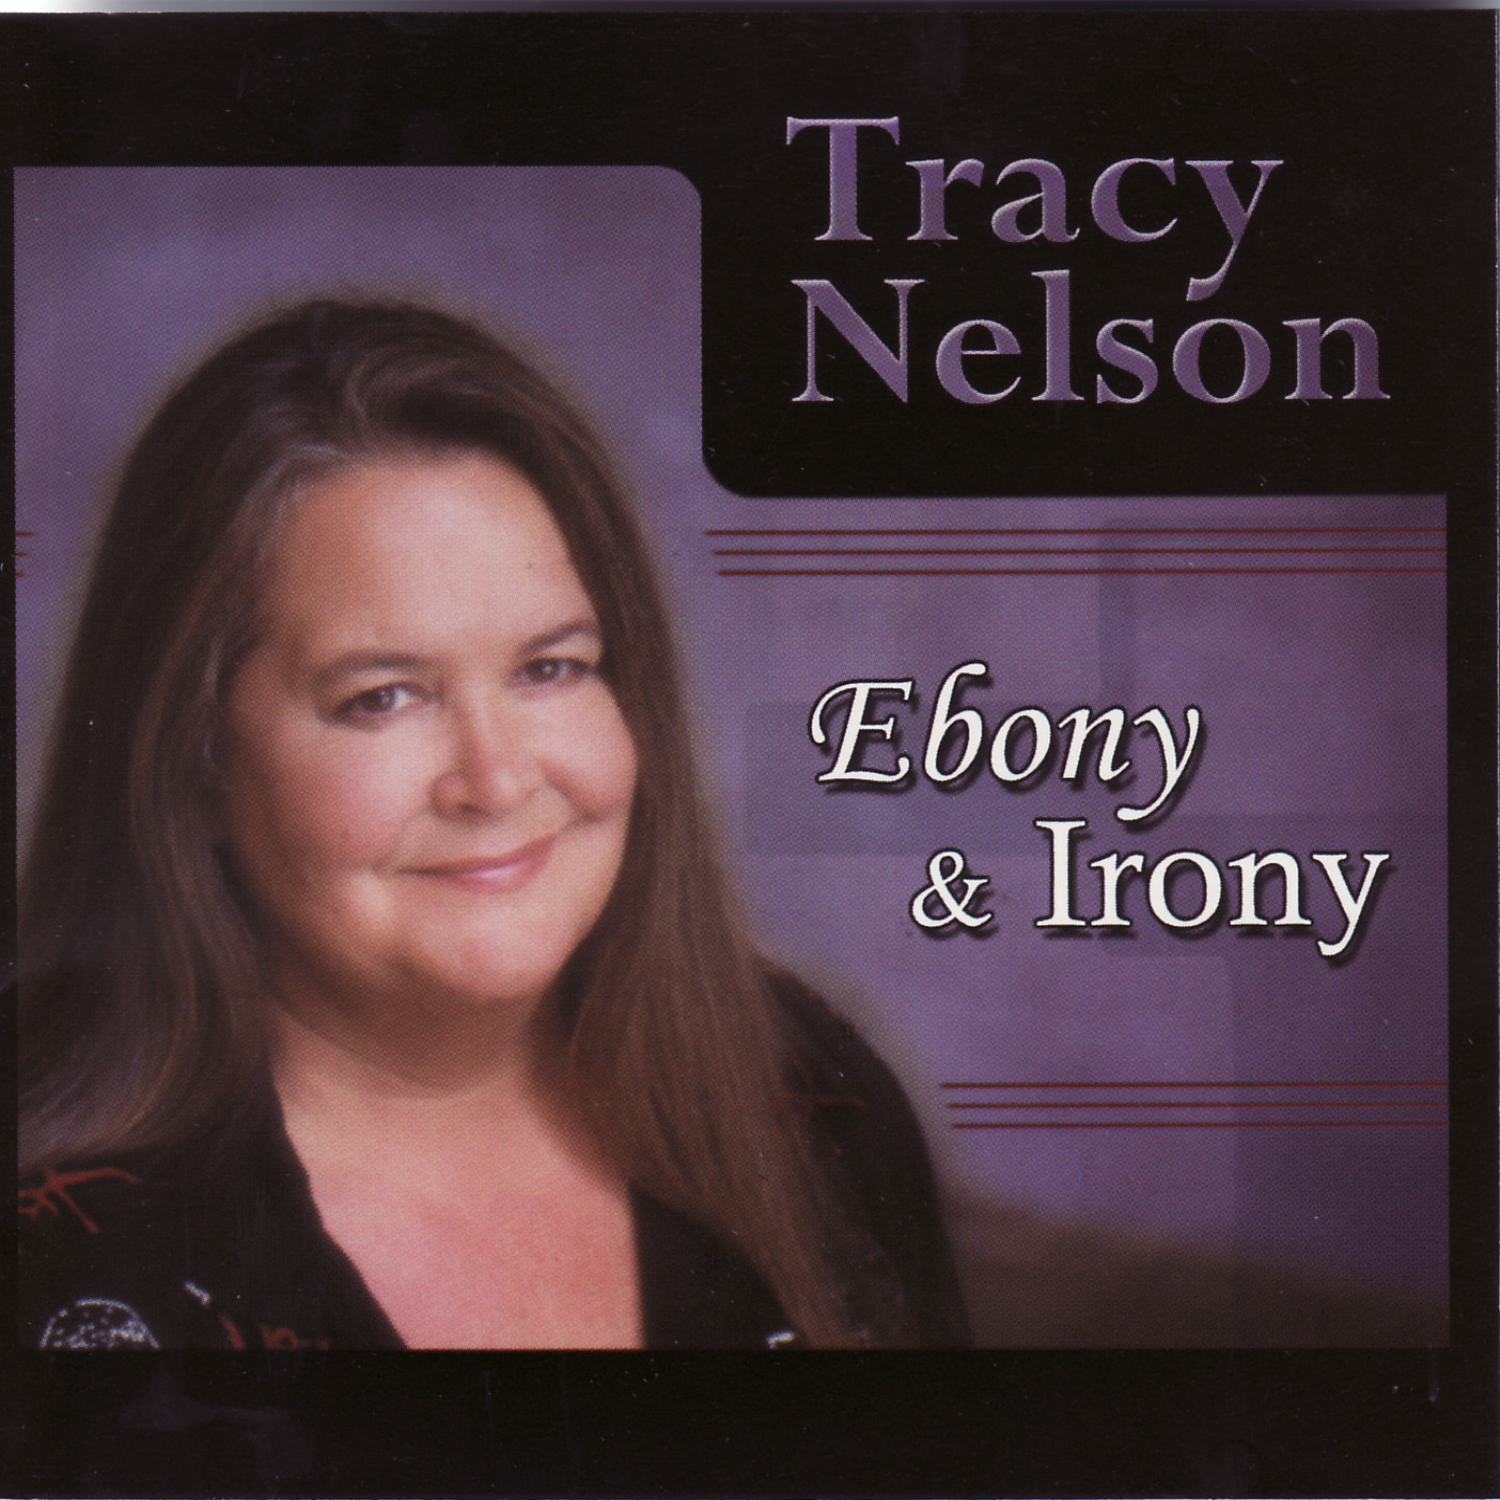 Tracy nelson ebony and ivory